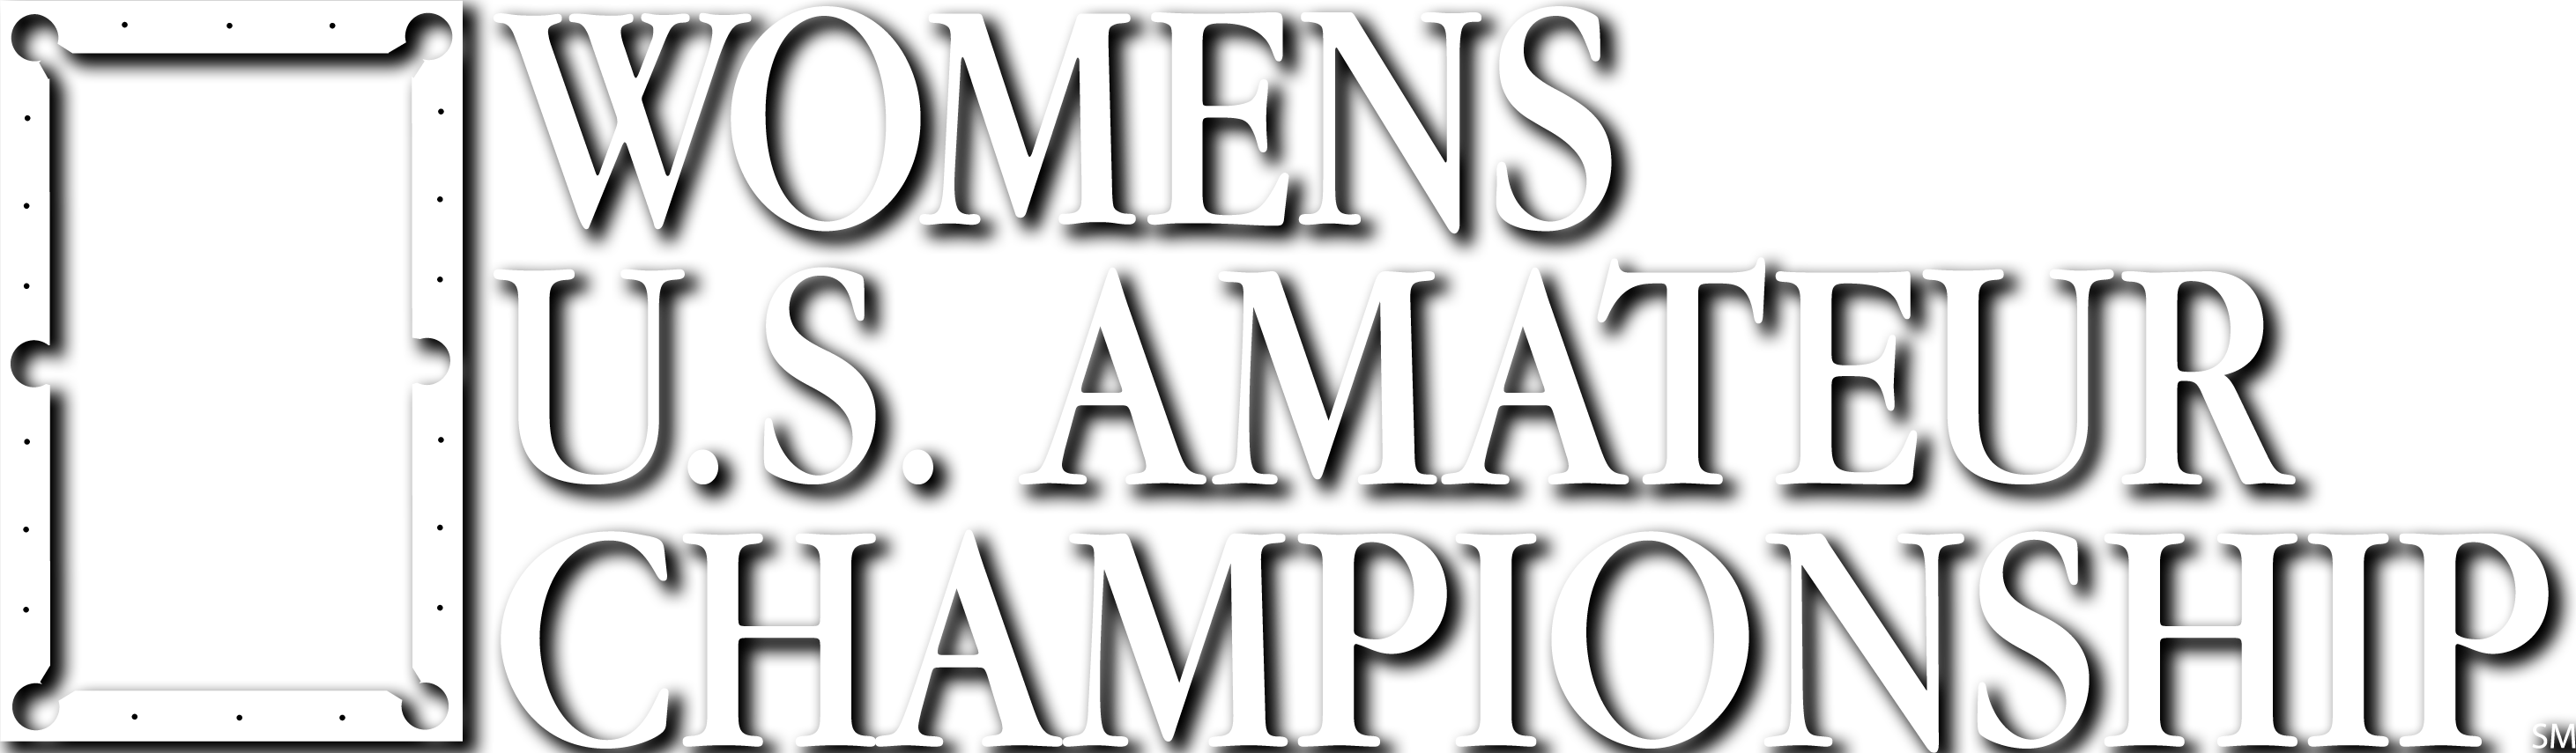 Womens USAM Logo